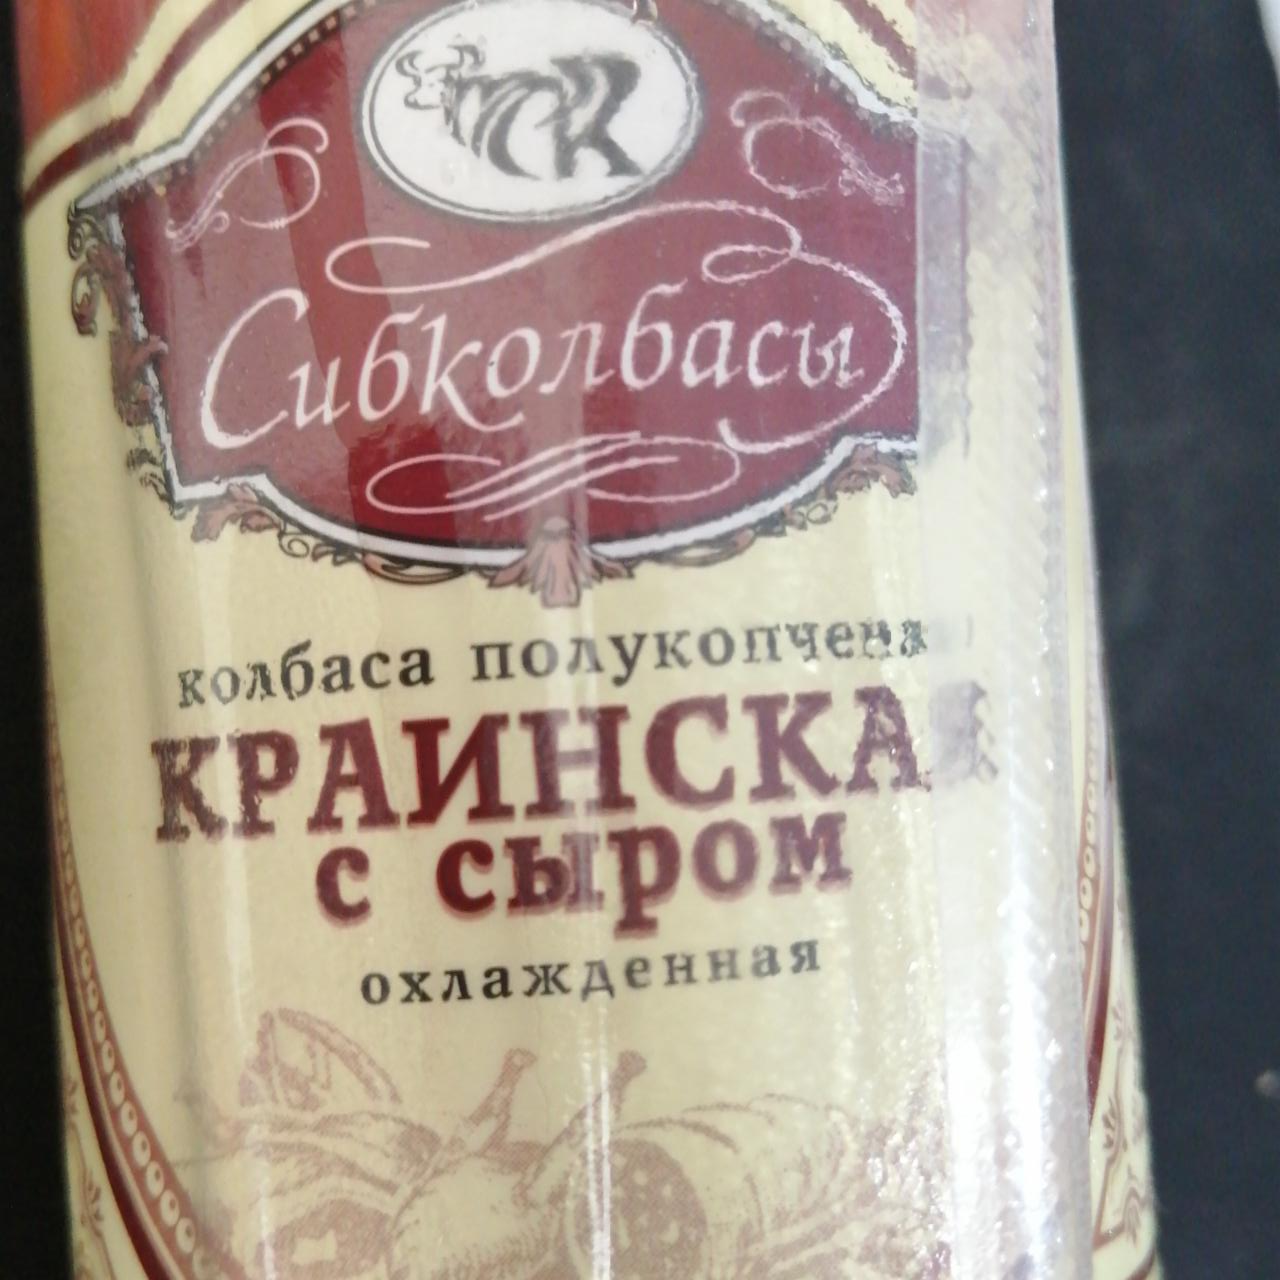 Фото - Колбаса краинская с сыром полукопченая Сибколбасы